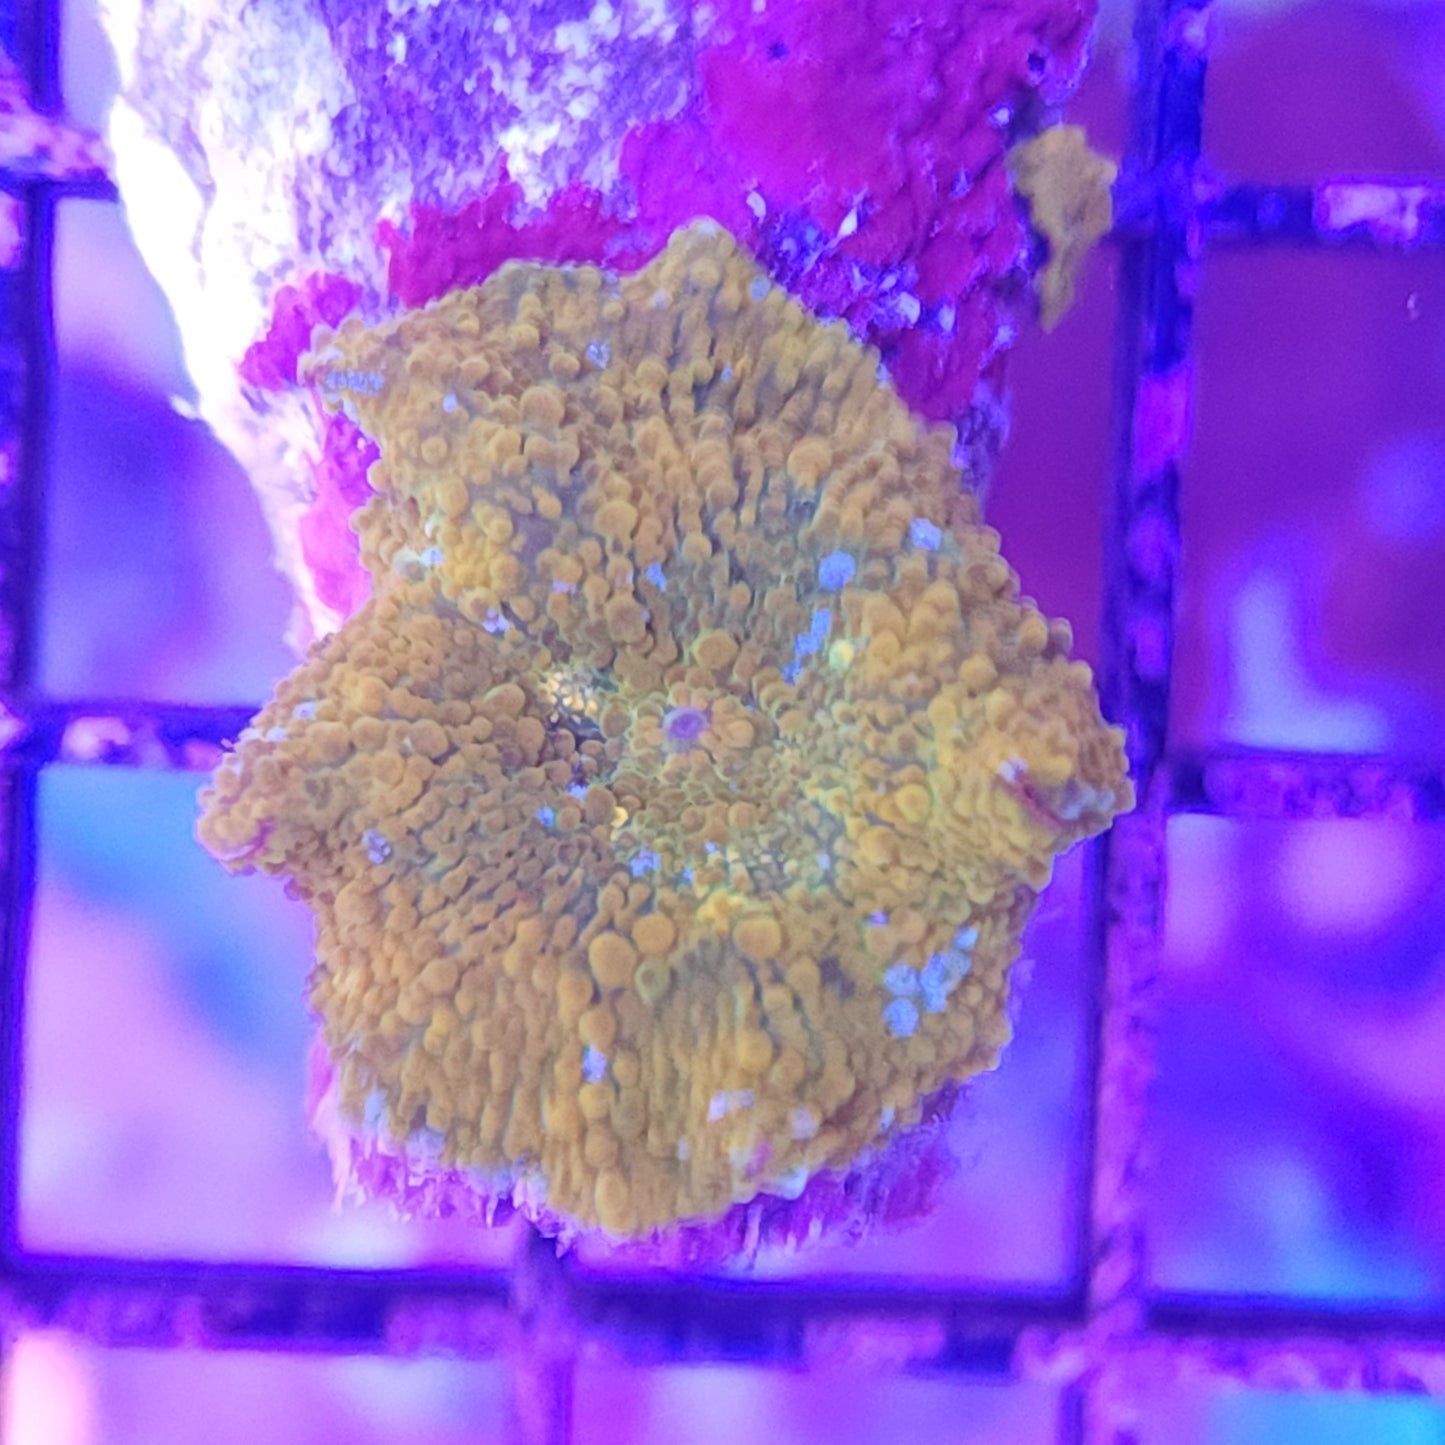 Yellow / Orange Mushroom